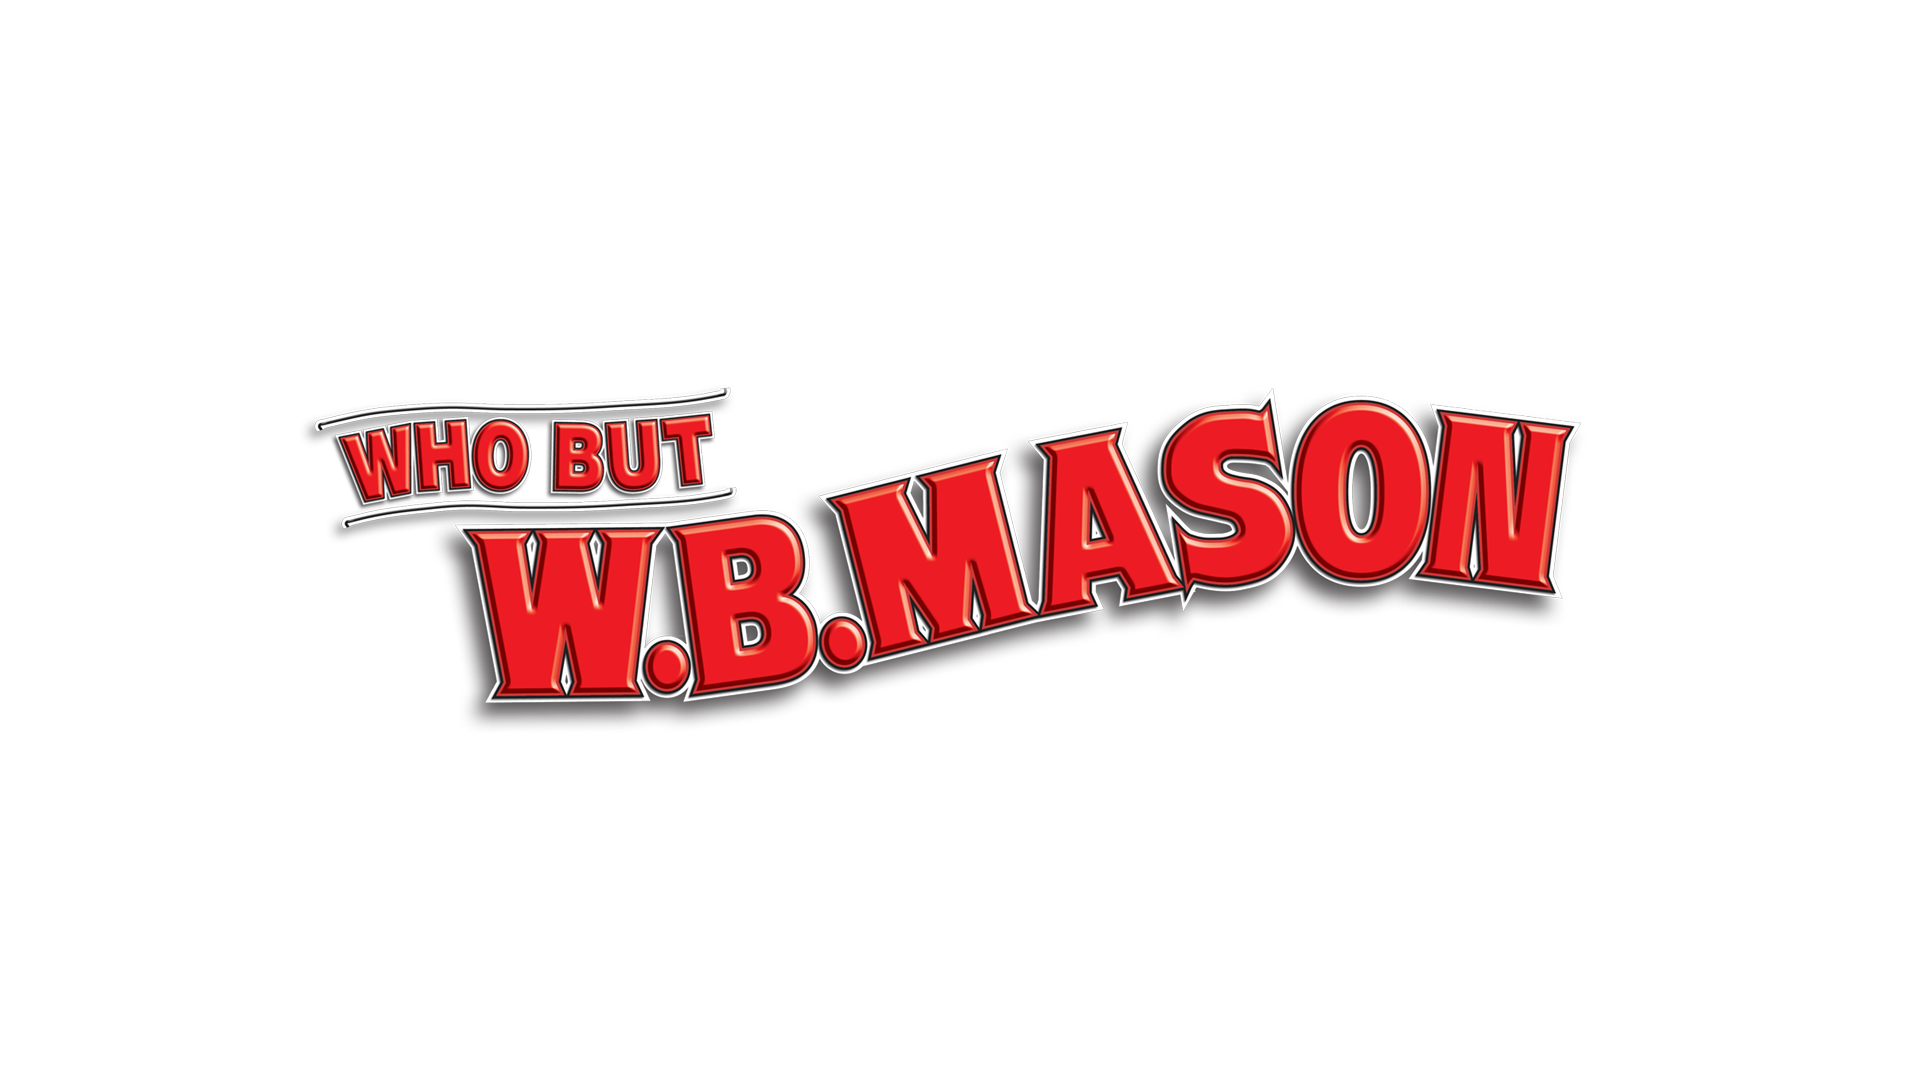 WB Mason